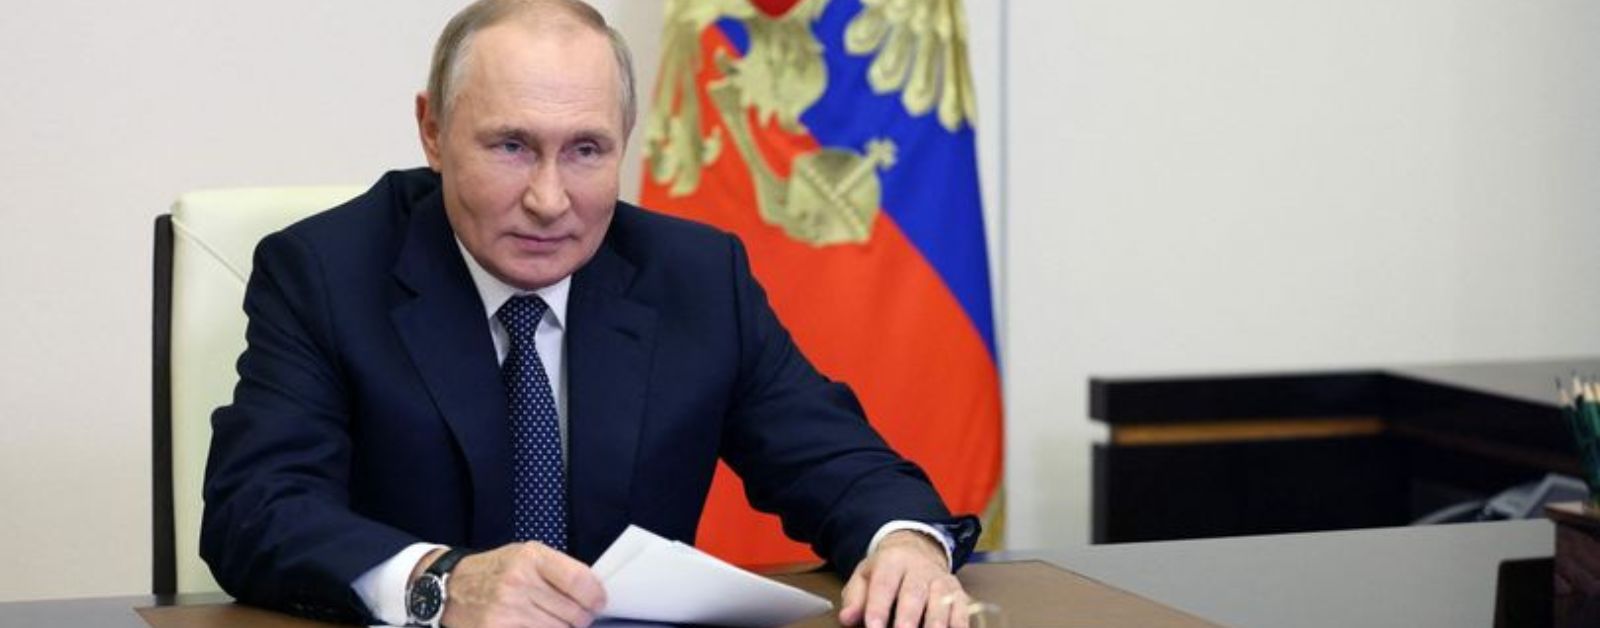 Démissionner ou mourir ; Poutine face à un coup d'État militaire